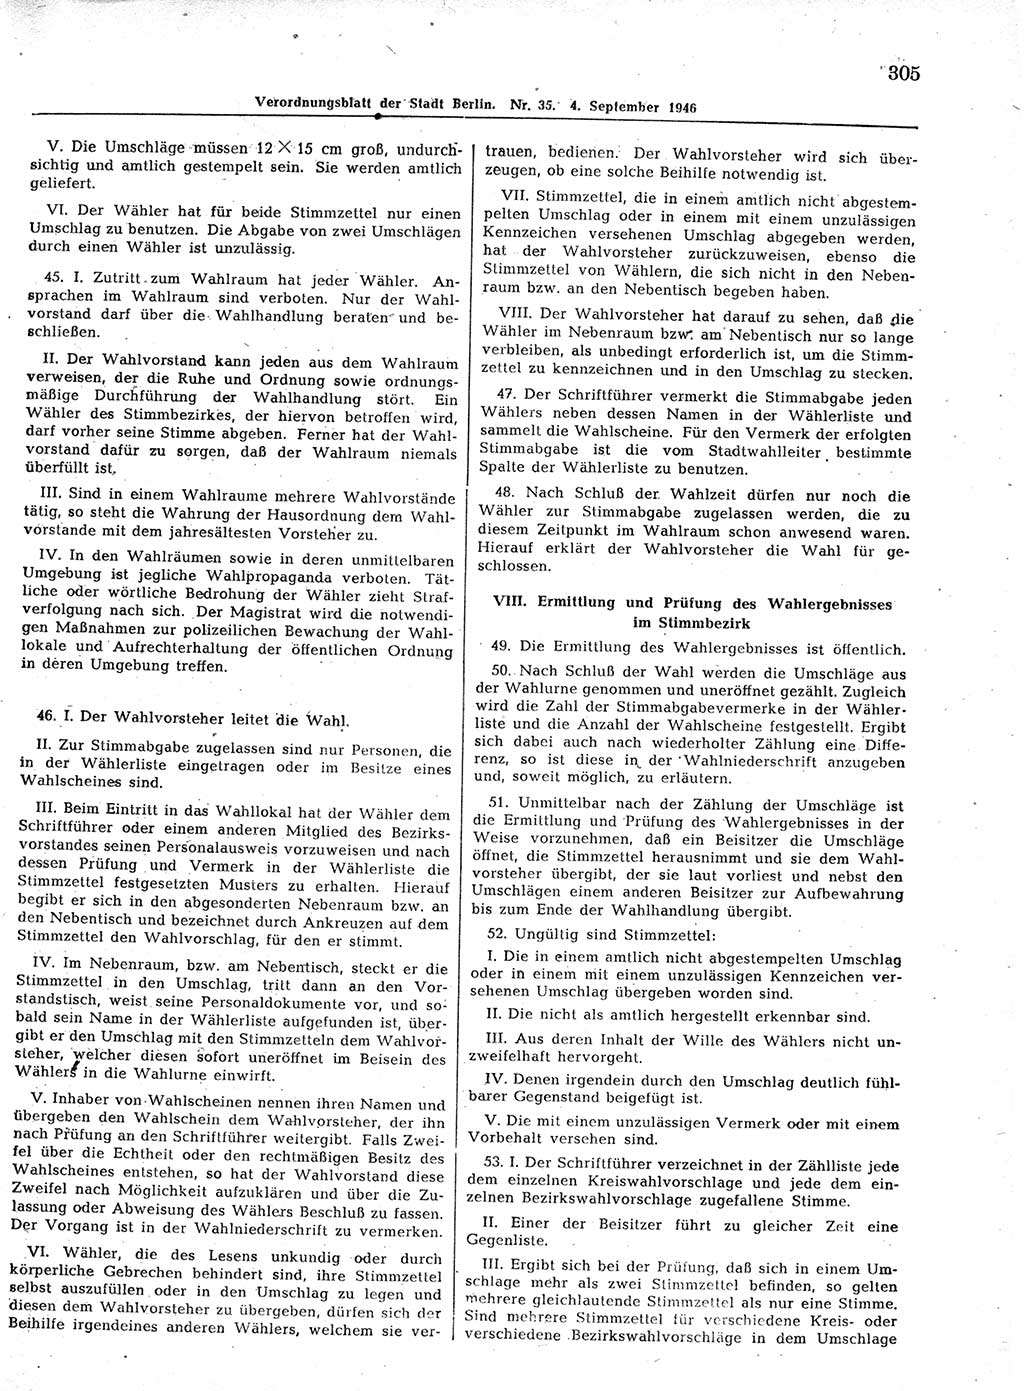 Verordnungsblatt (VOBl.) der Stadt Berlin, für Groß-Berlin 1946, Seite 305 (VOBl. Bln. 1946, S. 305)